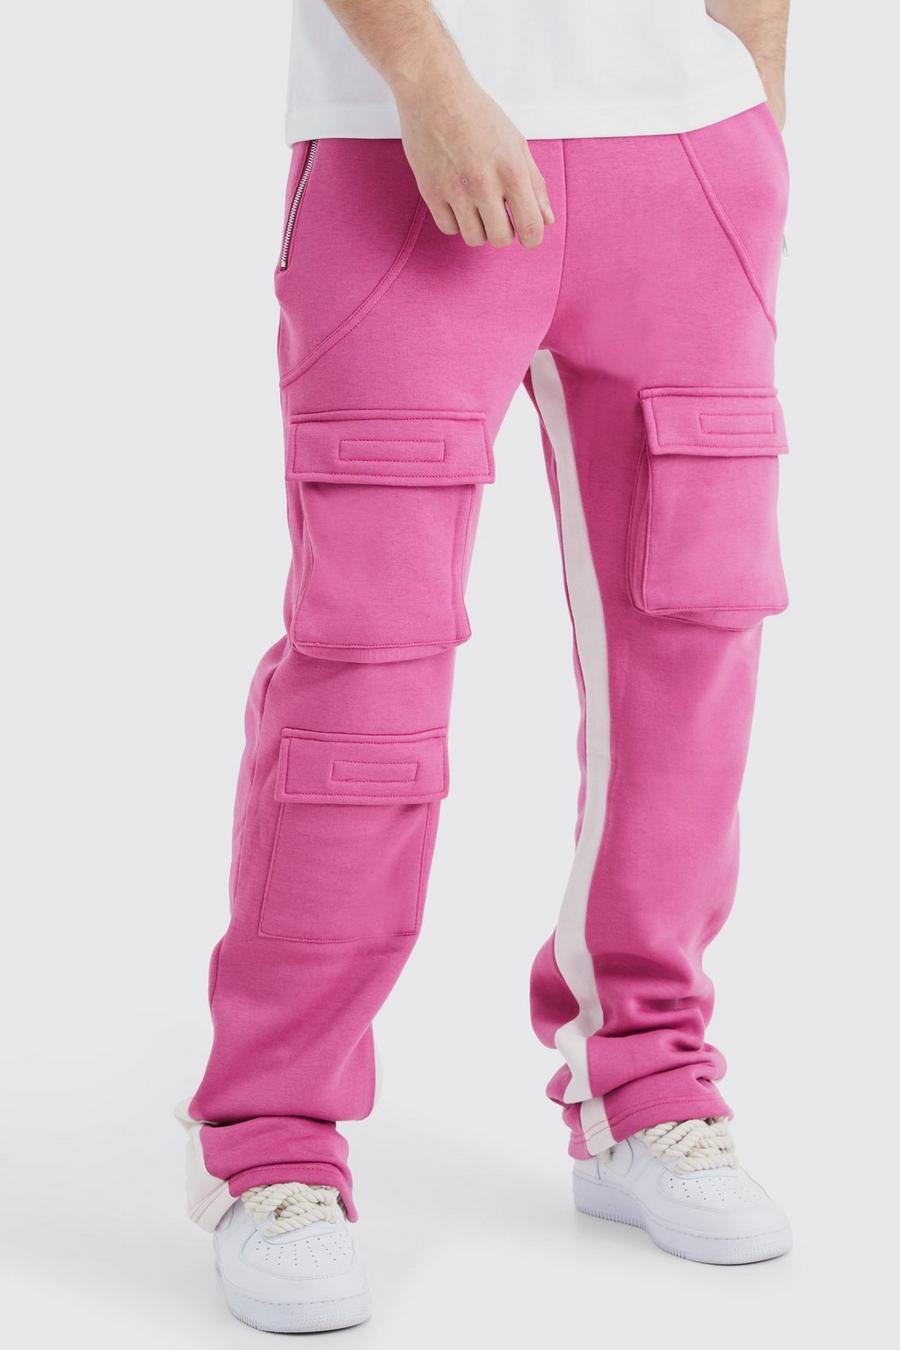 Pantaloni tuta Cargo Tall a zampa con pieghe sul fondo e inserti, Pink rosa